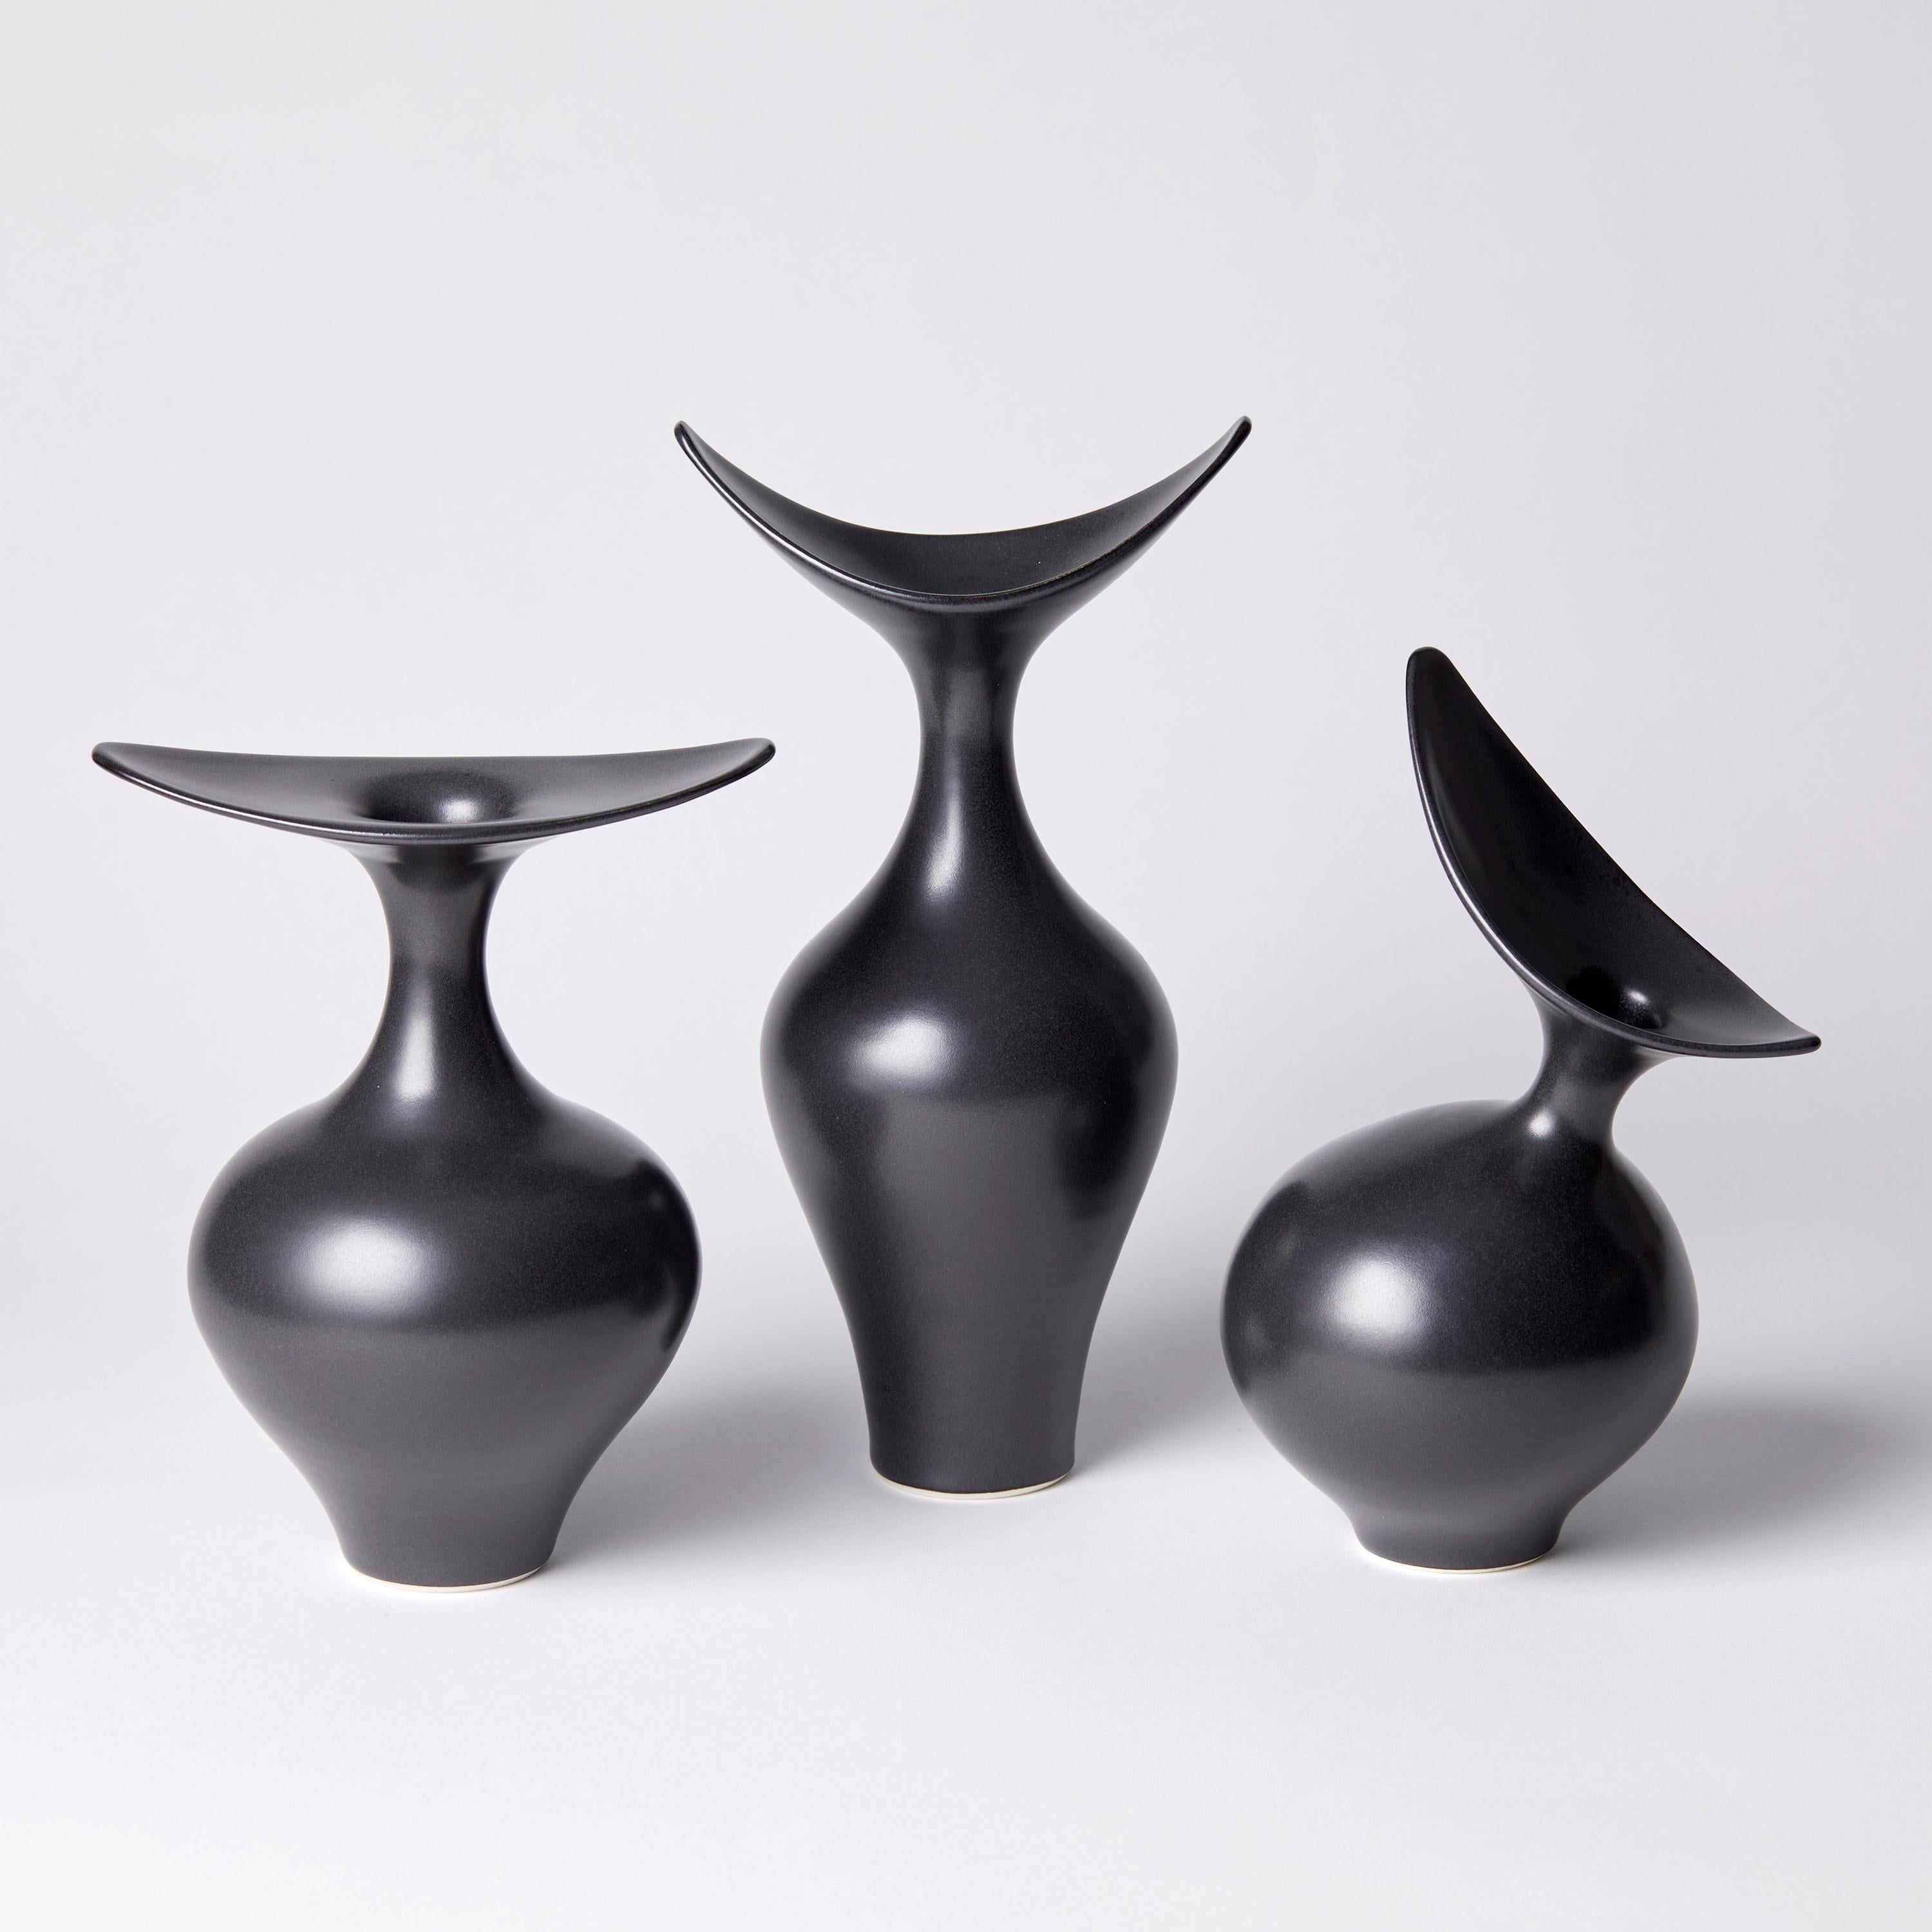 Organic Modern  Boat Necked Vase II, black / ebony sculptural porcelain vase by Vivienne Foley